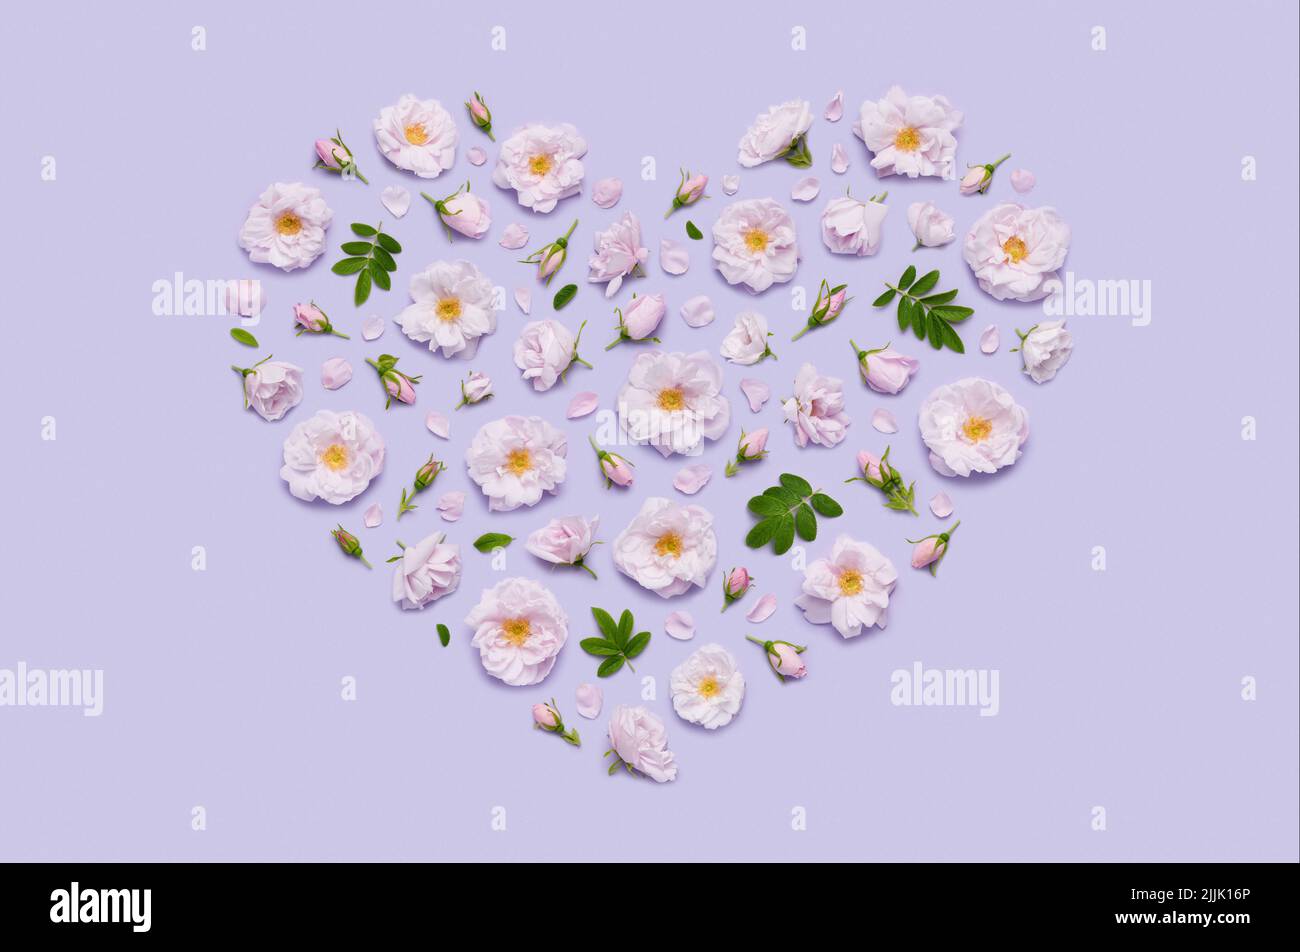 Rosa blühende Celestial minden Rose Blumen in Herzform auf pastellviolettem Hintergrund Draufsicht flach Lay Stockfoto